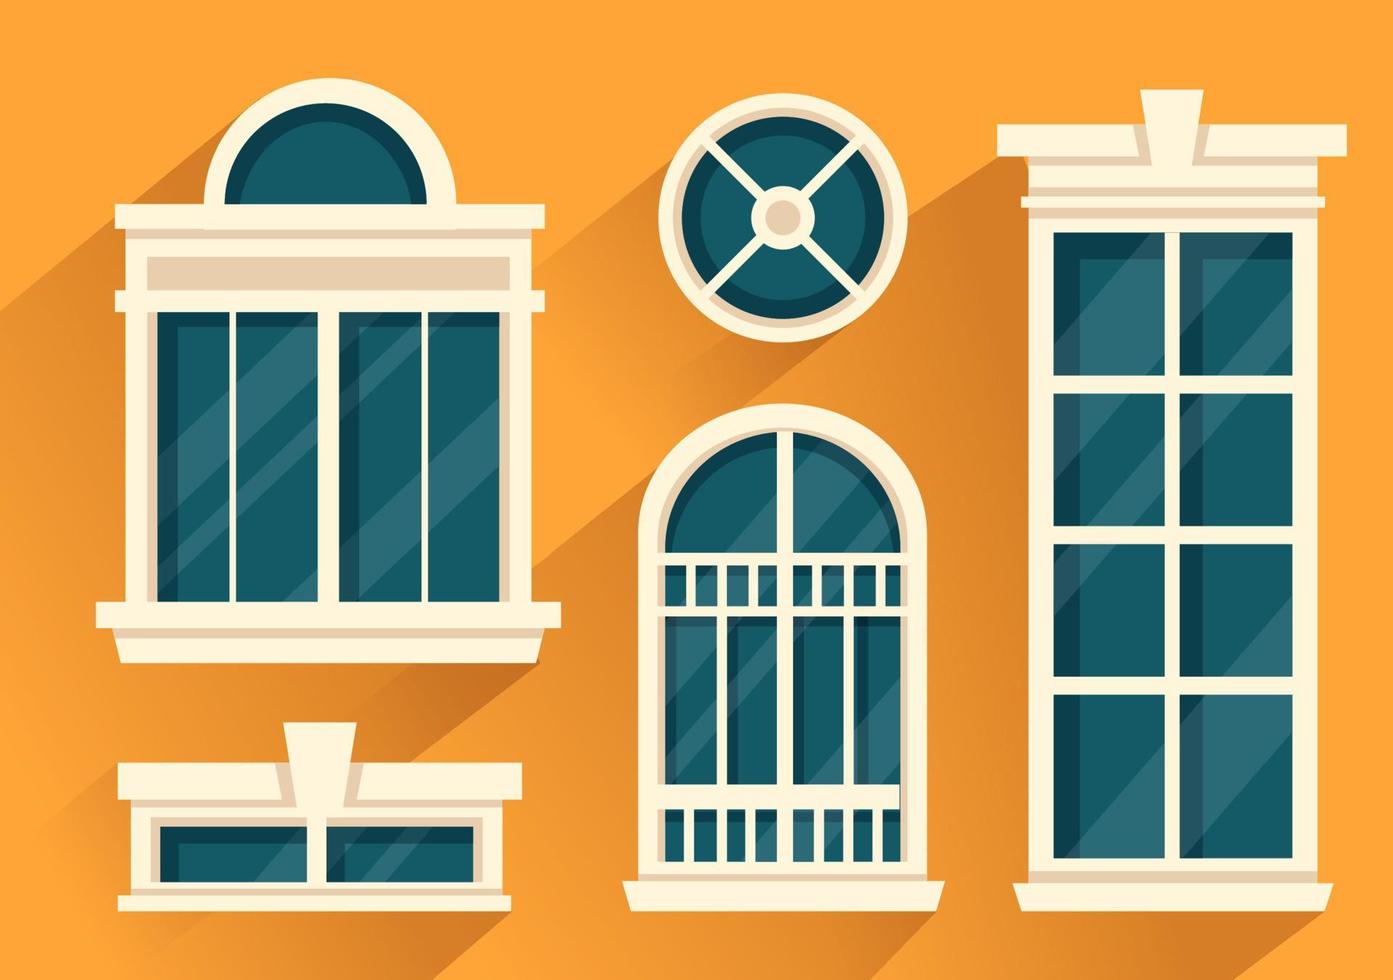 hus arkitektur med uppsättning av dörrar och fönster olika former, färger och storlekar i mall hand dragen tecknad serie platt bakgrund illustration vektor